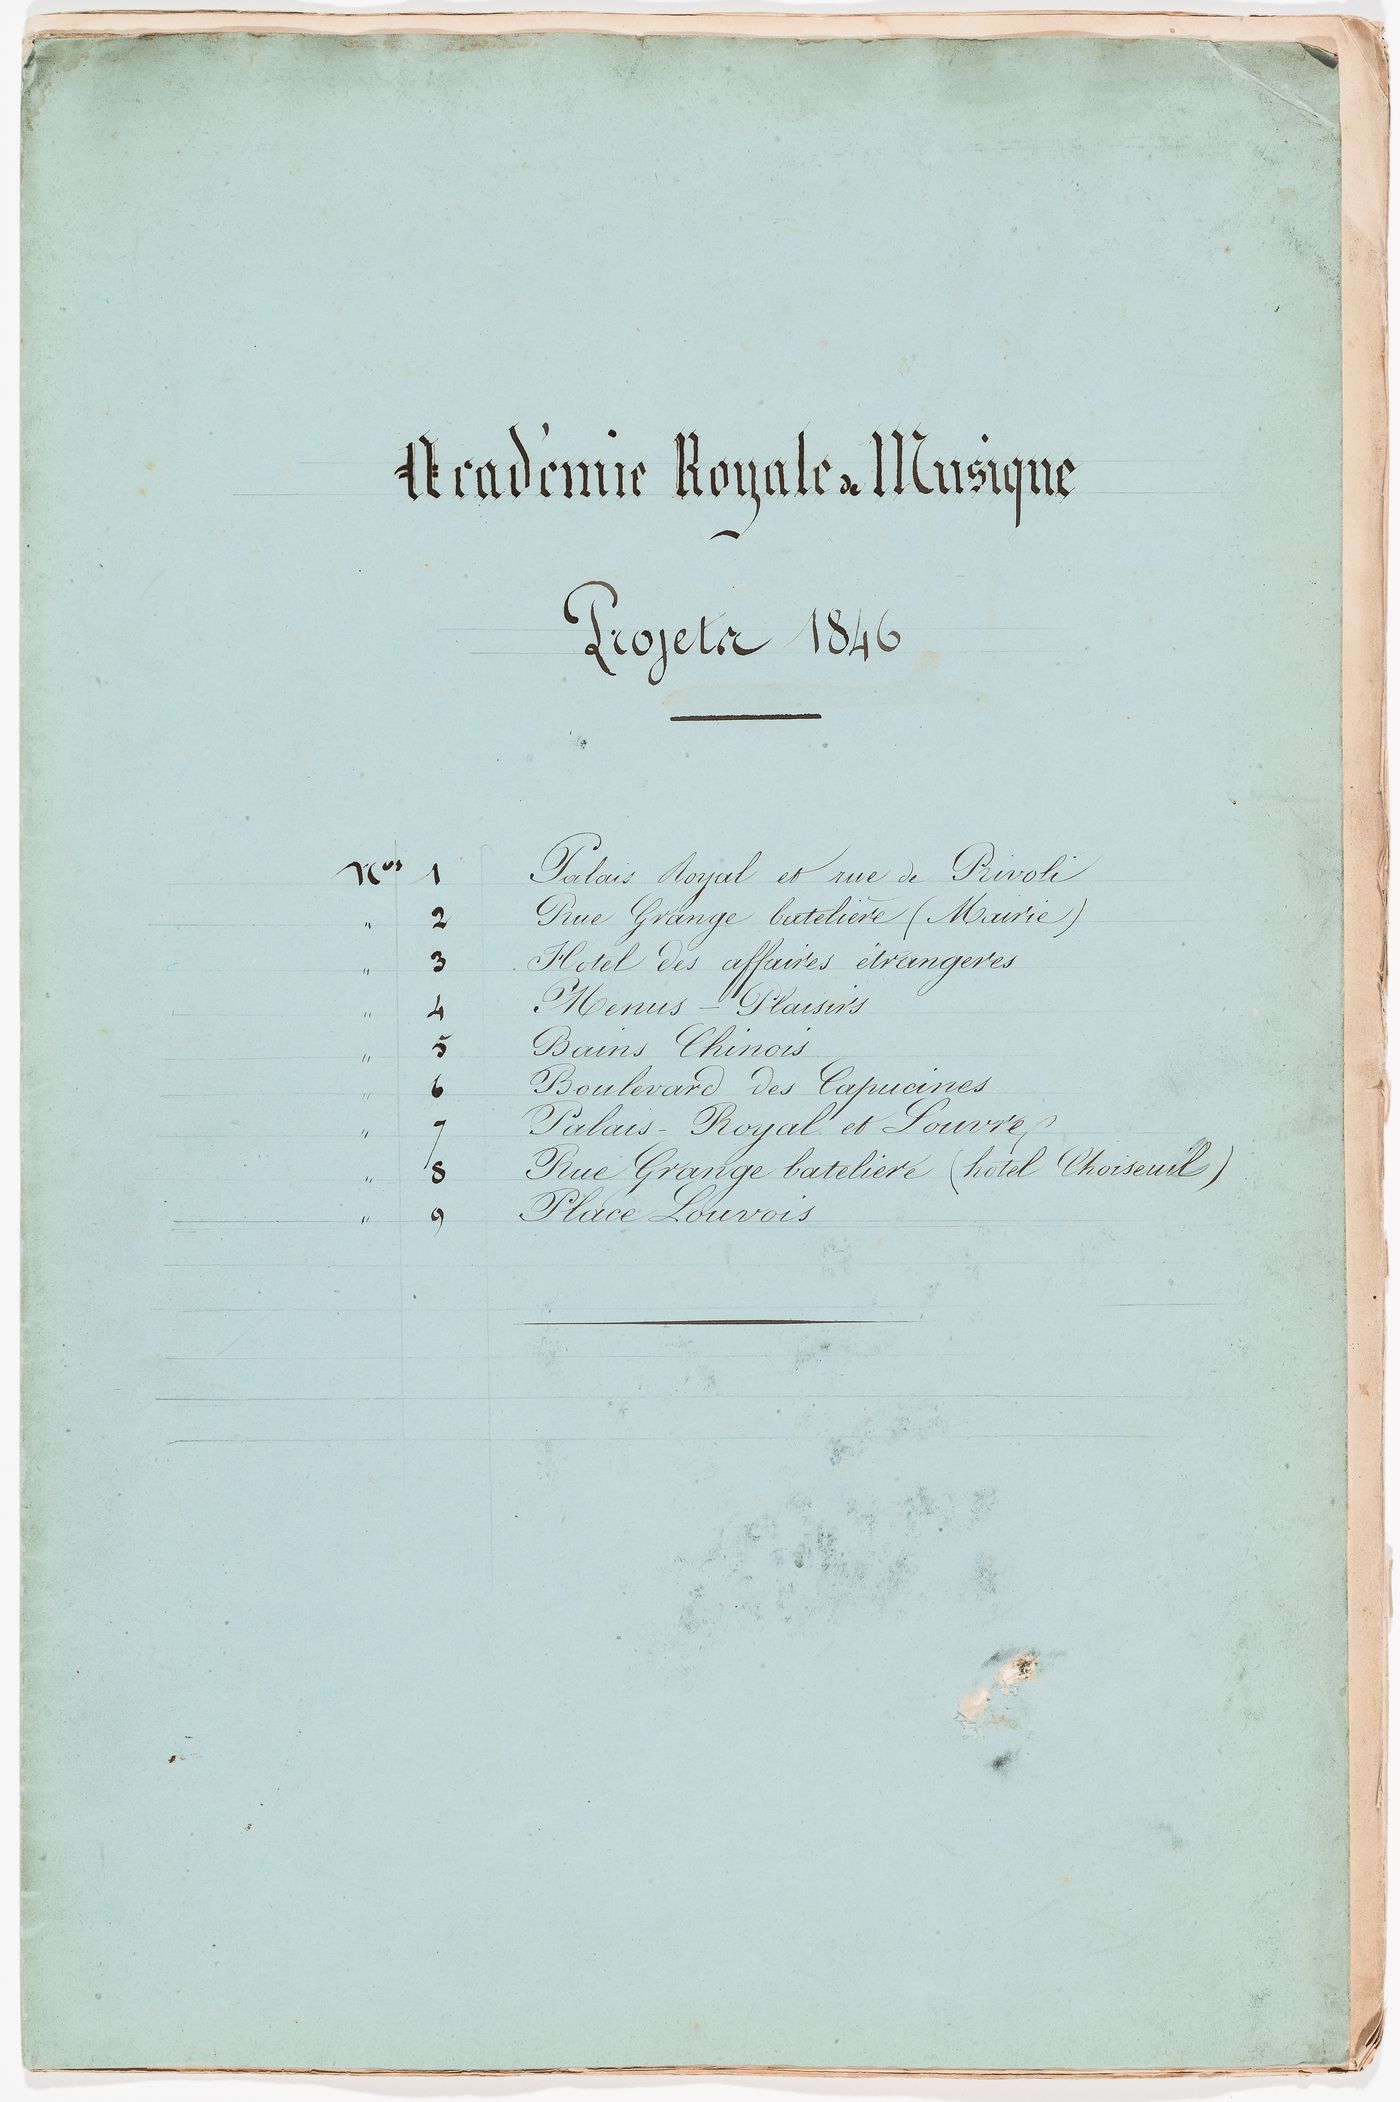 Academie Royale de Musique Projets 1846